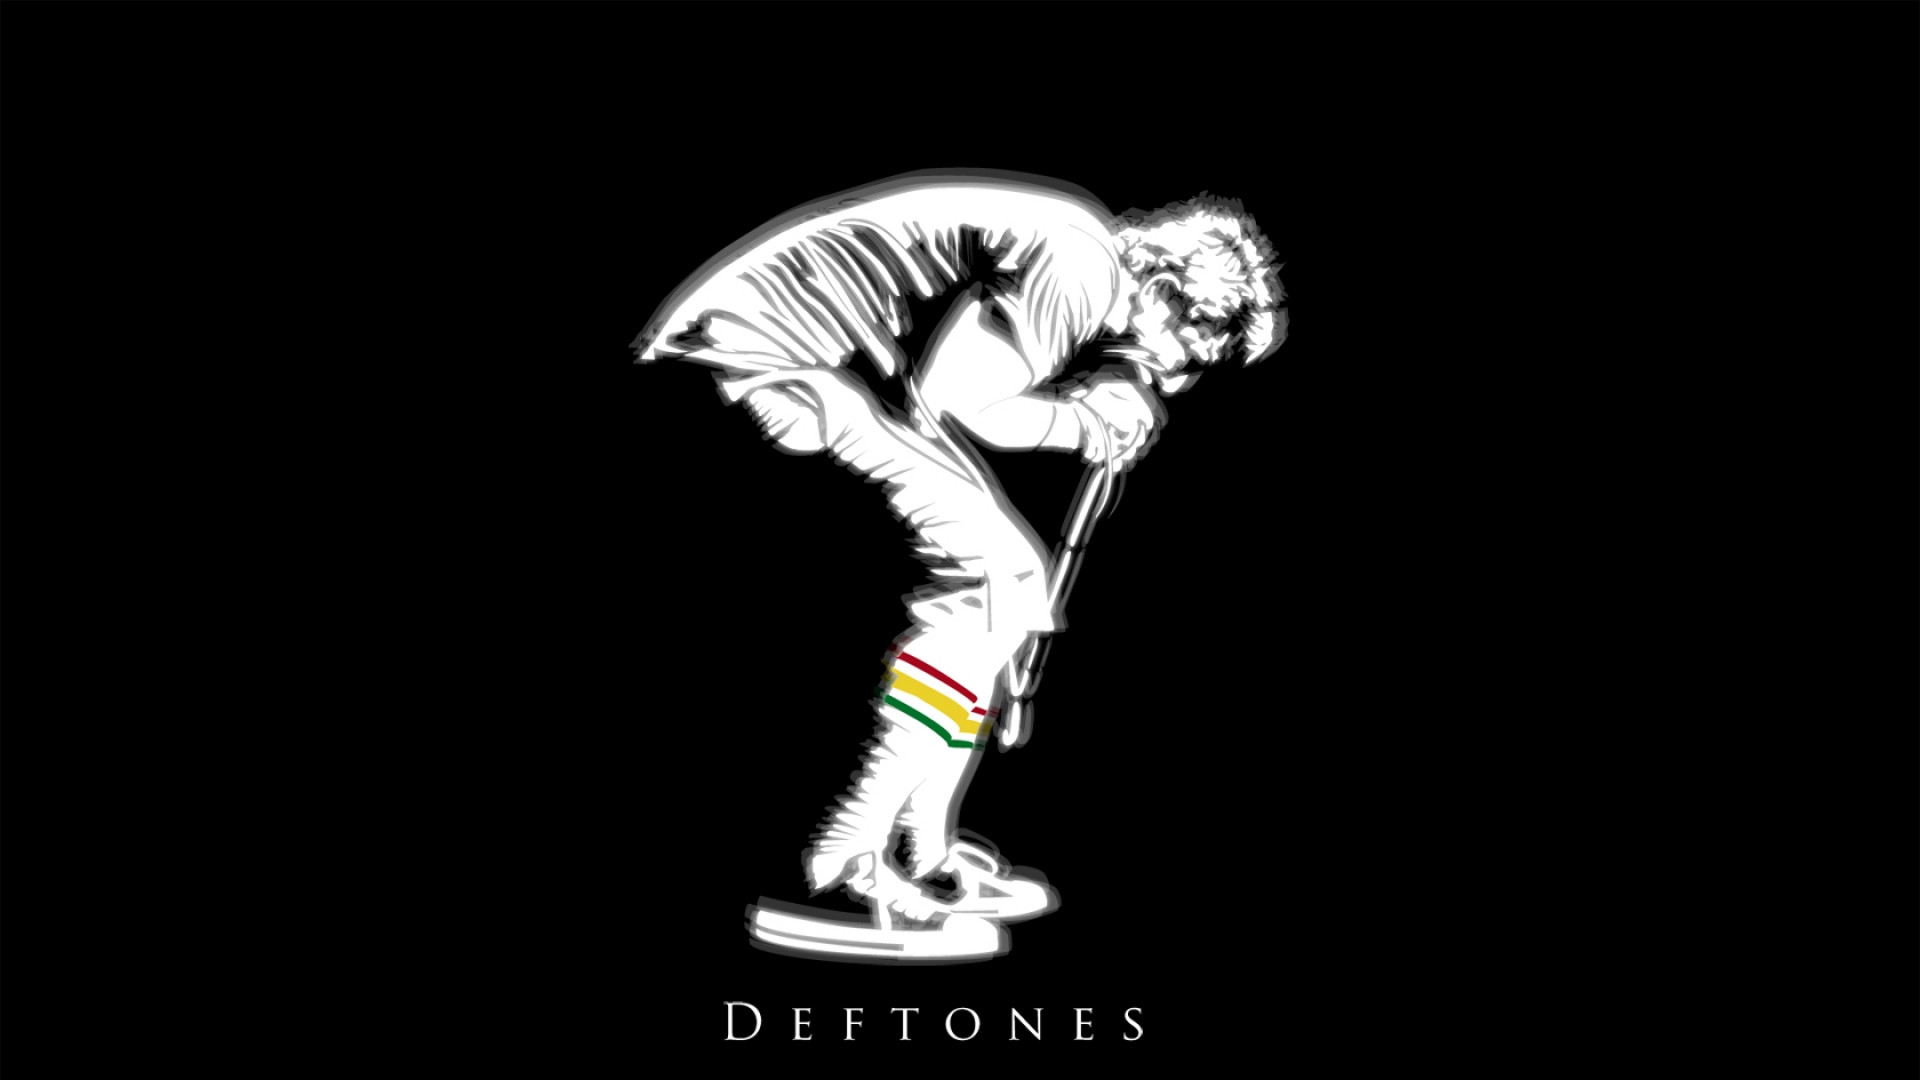 Deftones wallpaper by VanLars  Download on ZEDGE  ec02